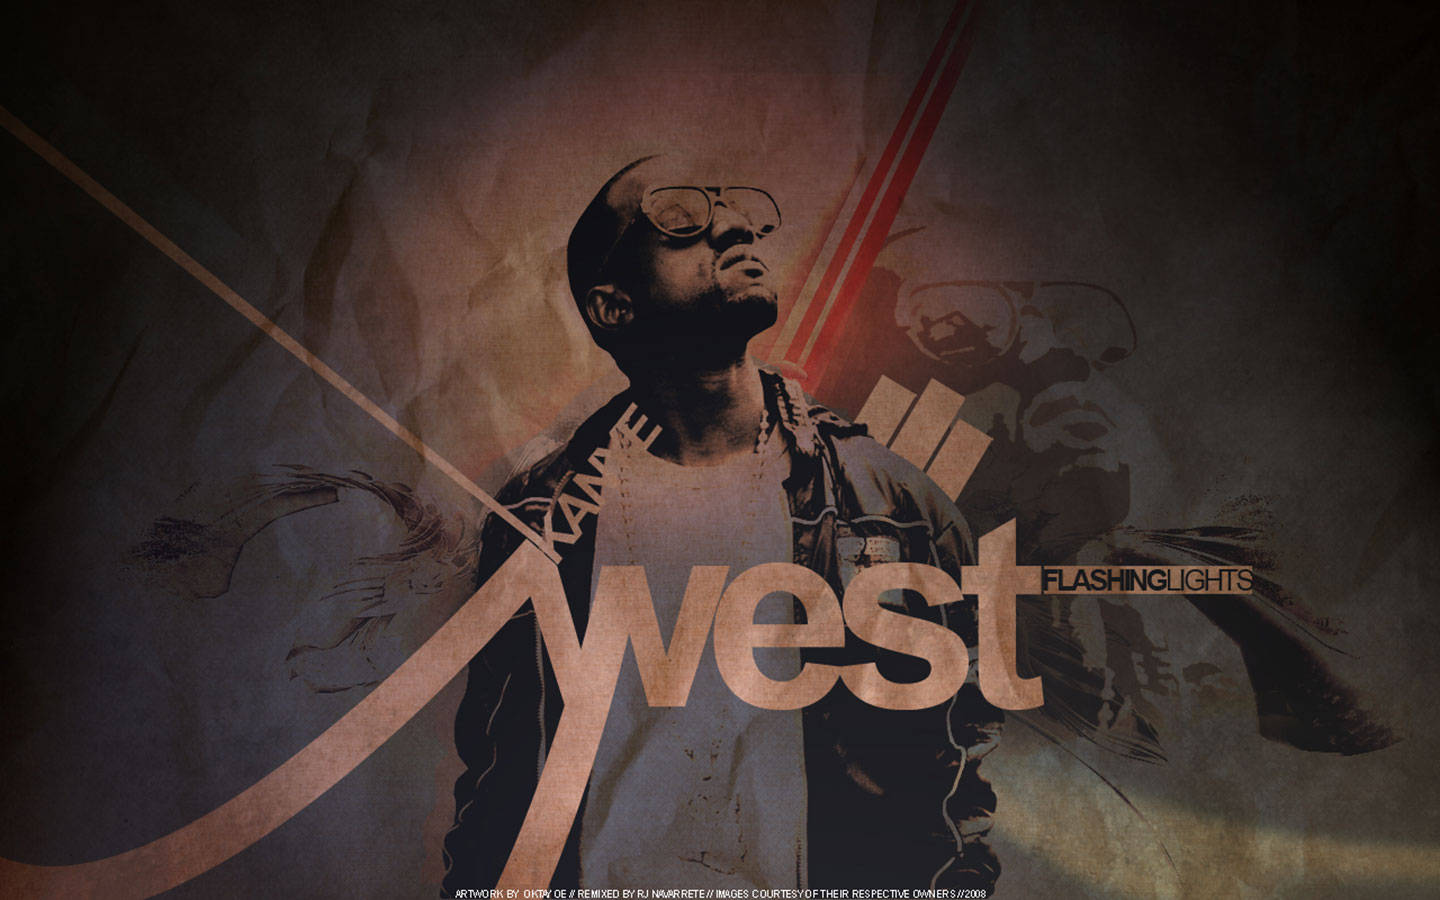 Kanye West Flashing Lights Album Cover Background